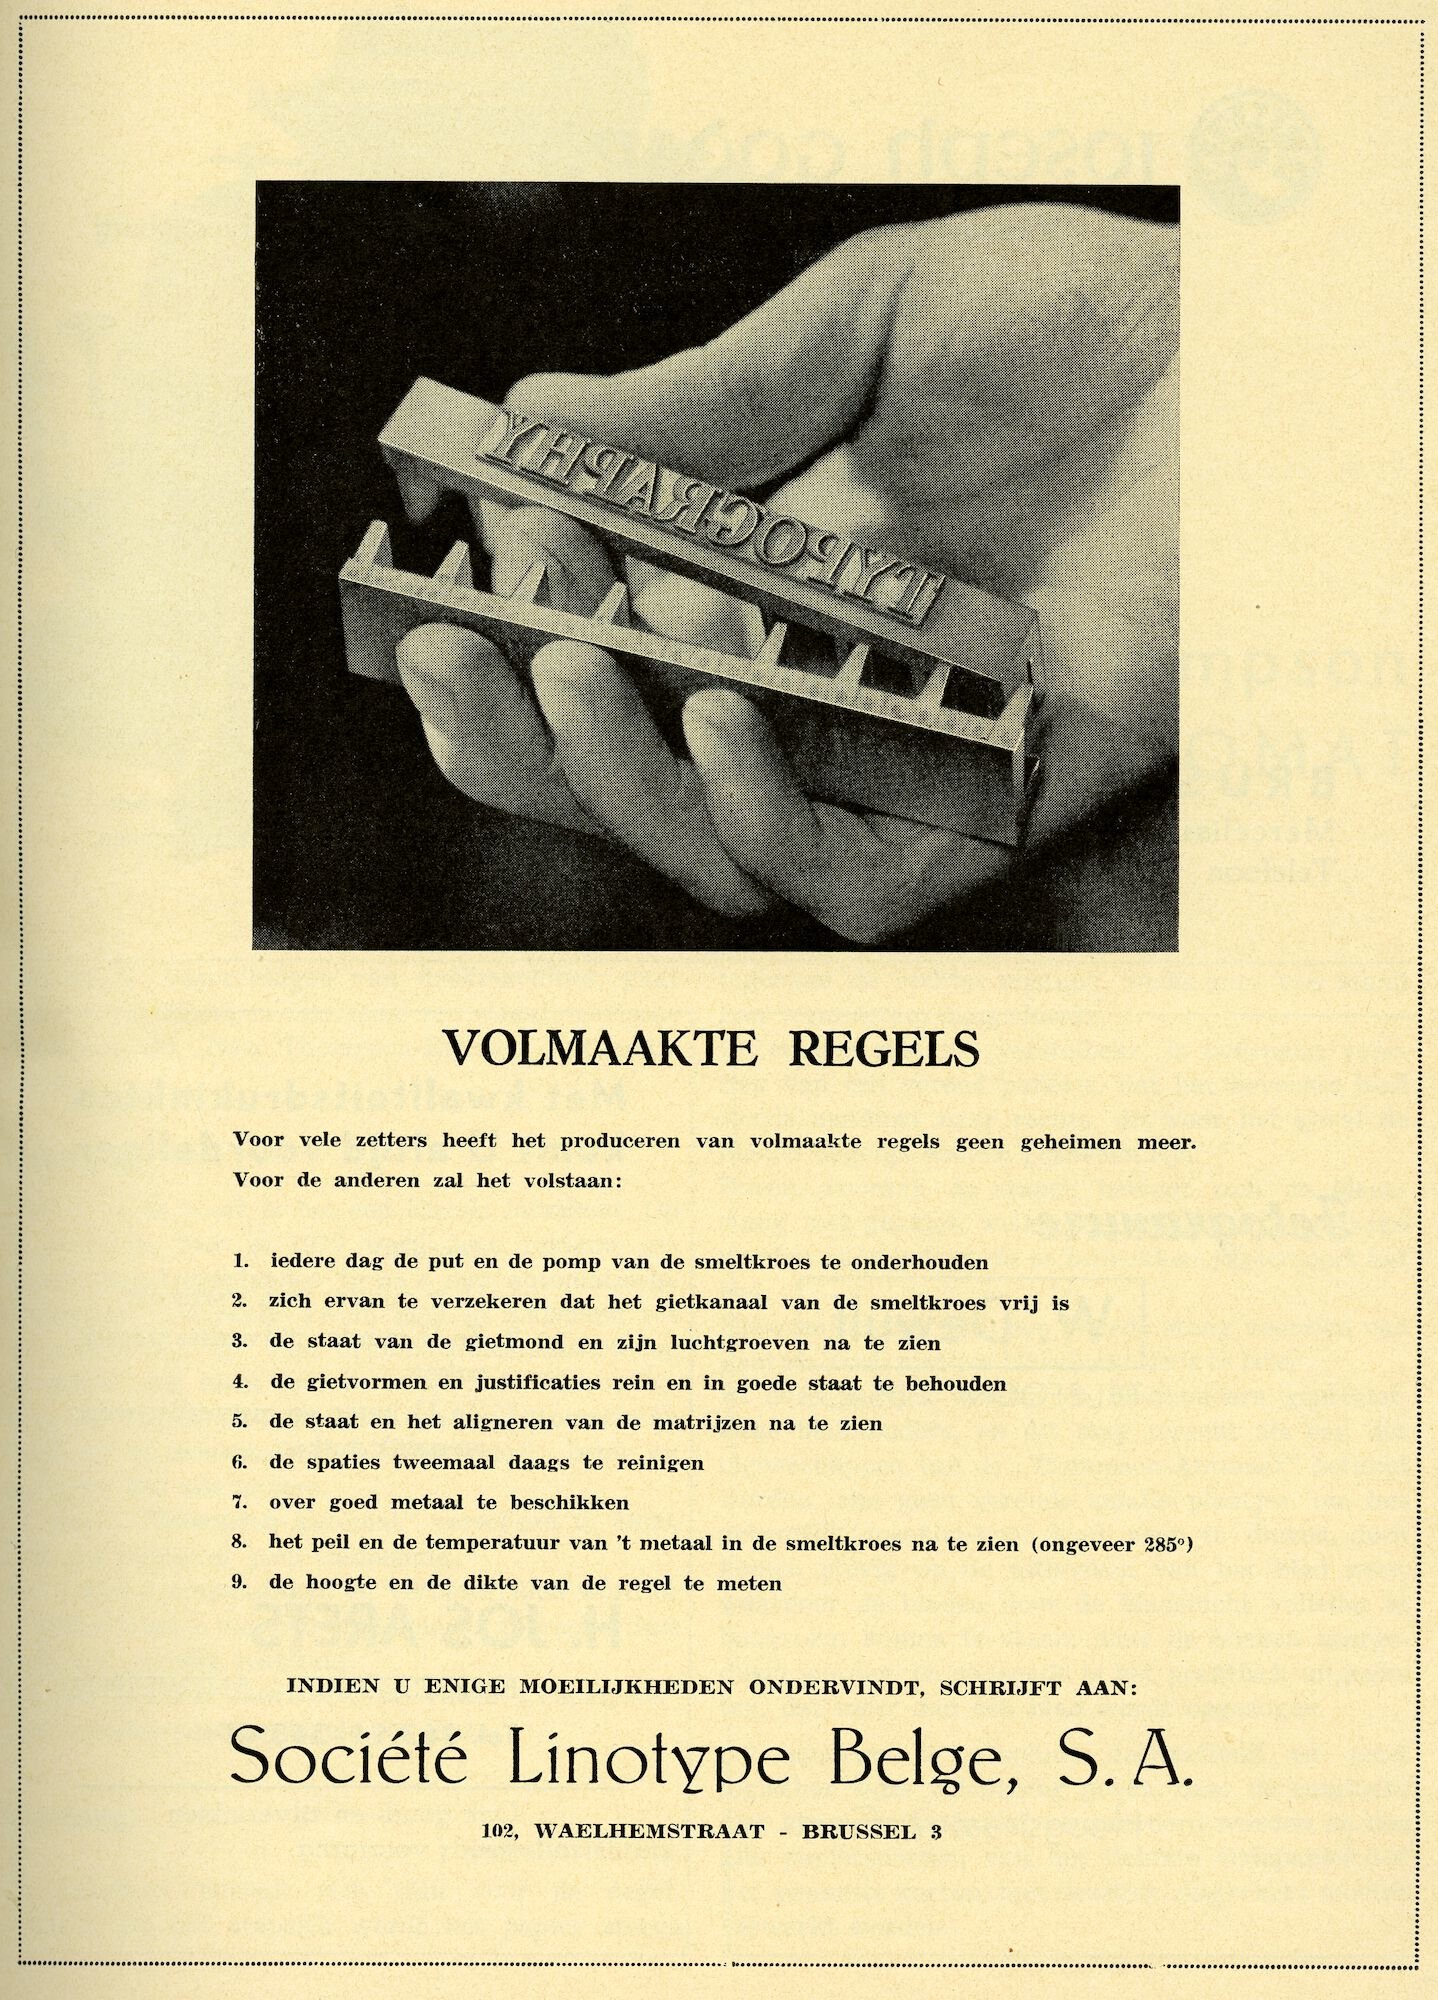 Reclame door Société Linotype Belge voor het produceren van volmaakte loden regels tekst